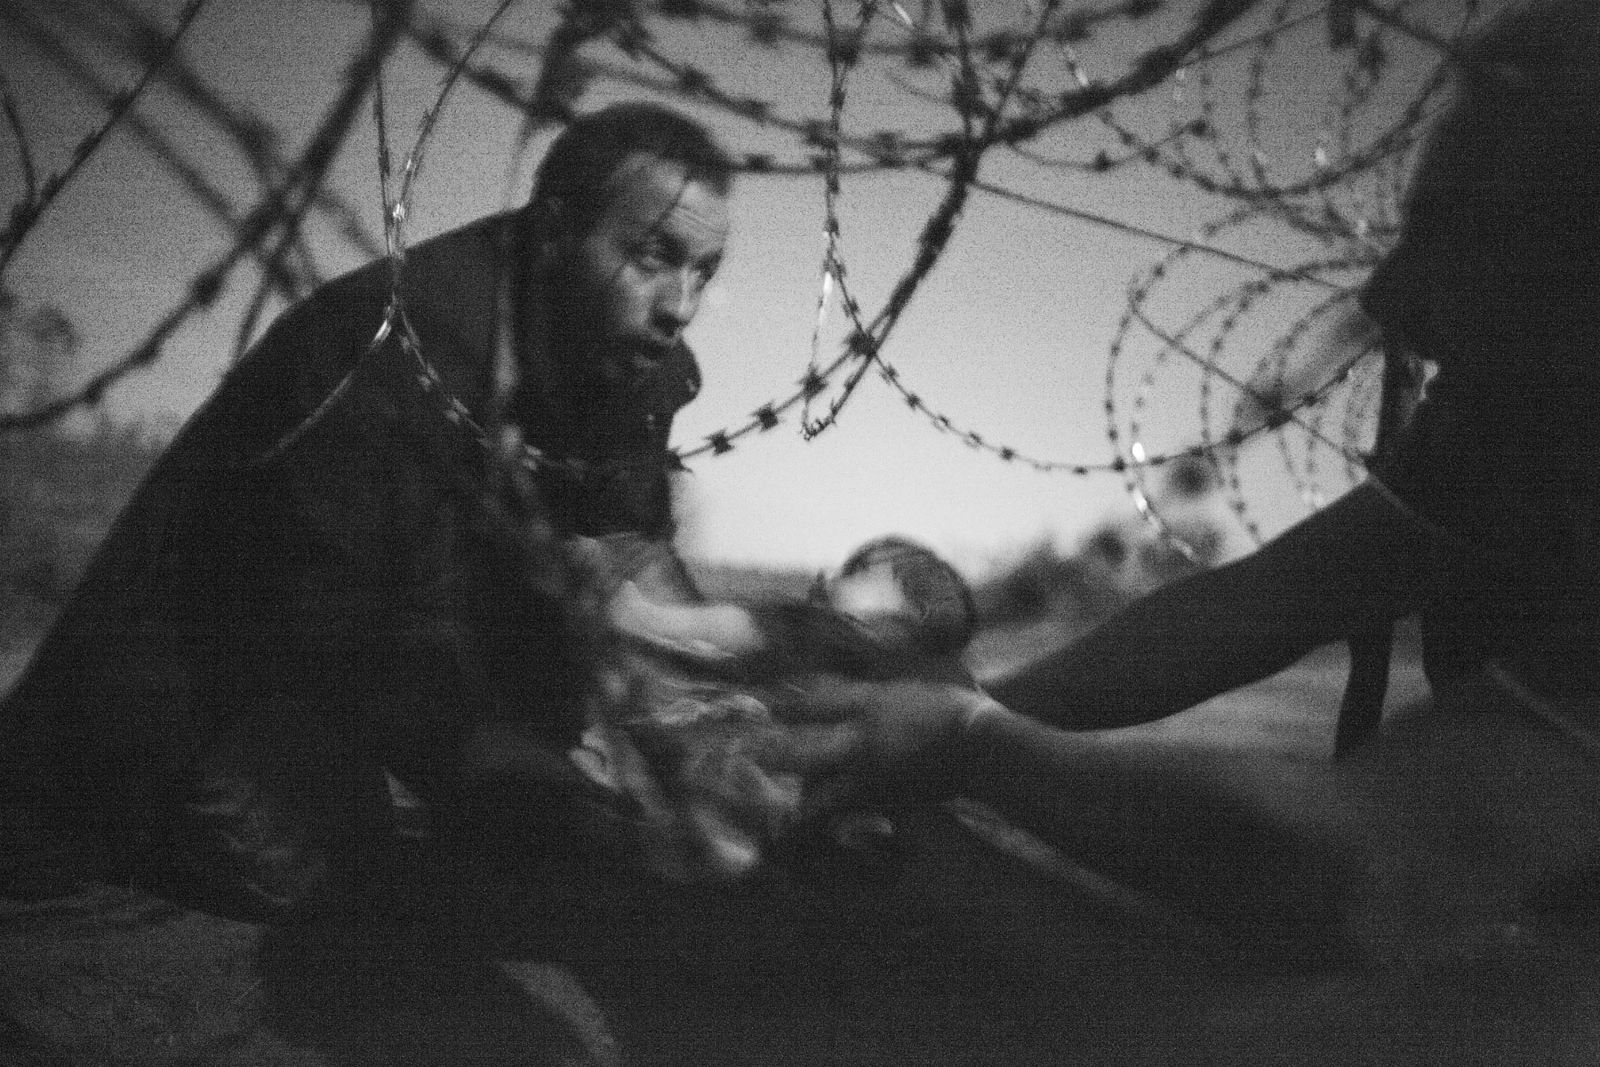 Une photo sur la crise des réfugiés élue Photo de l'année 2015